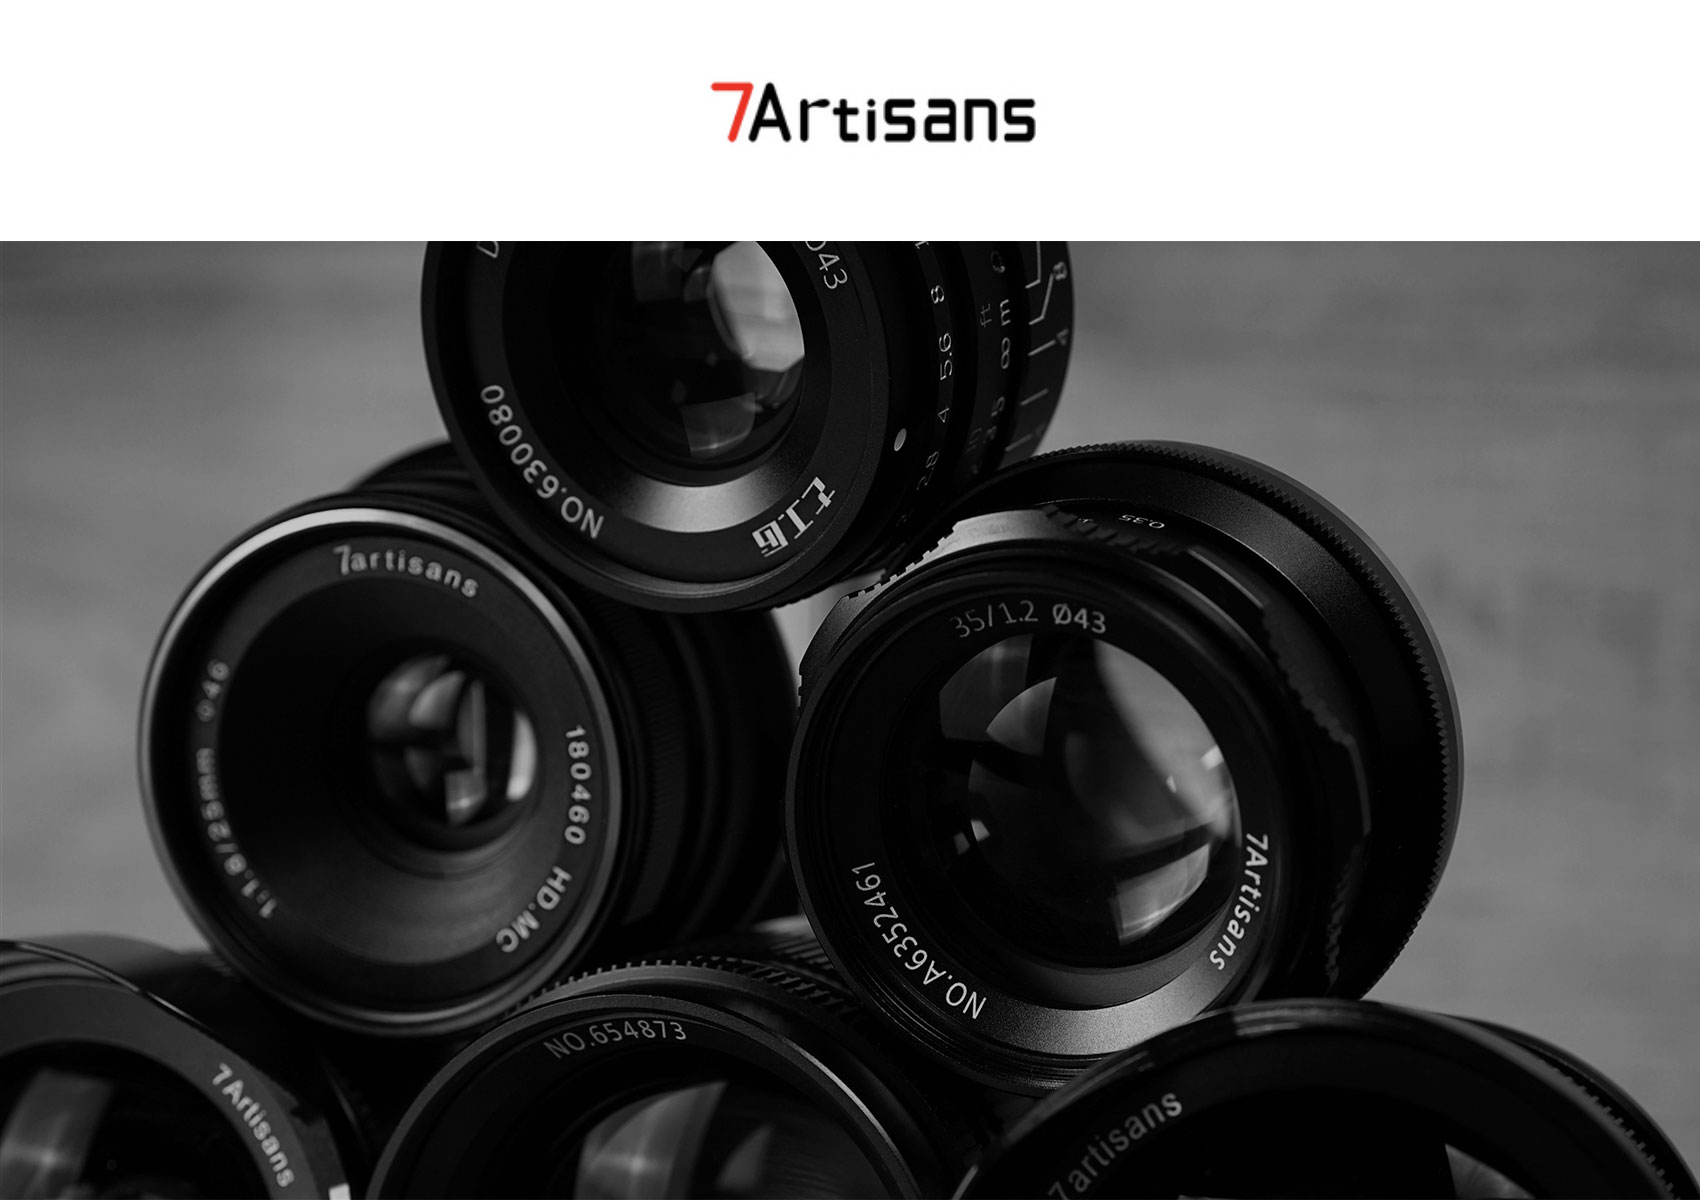 Φωτογραφικοί φακοί 7Artisans. Κορυφαία ποιότητα σε προσιτή τιμή! 